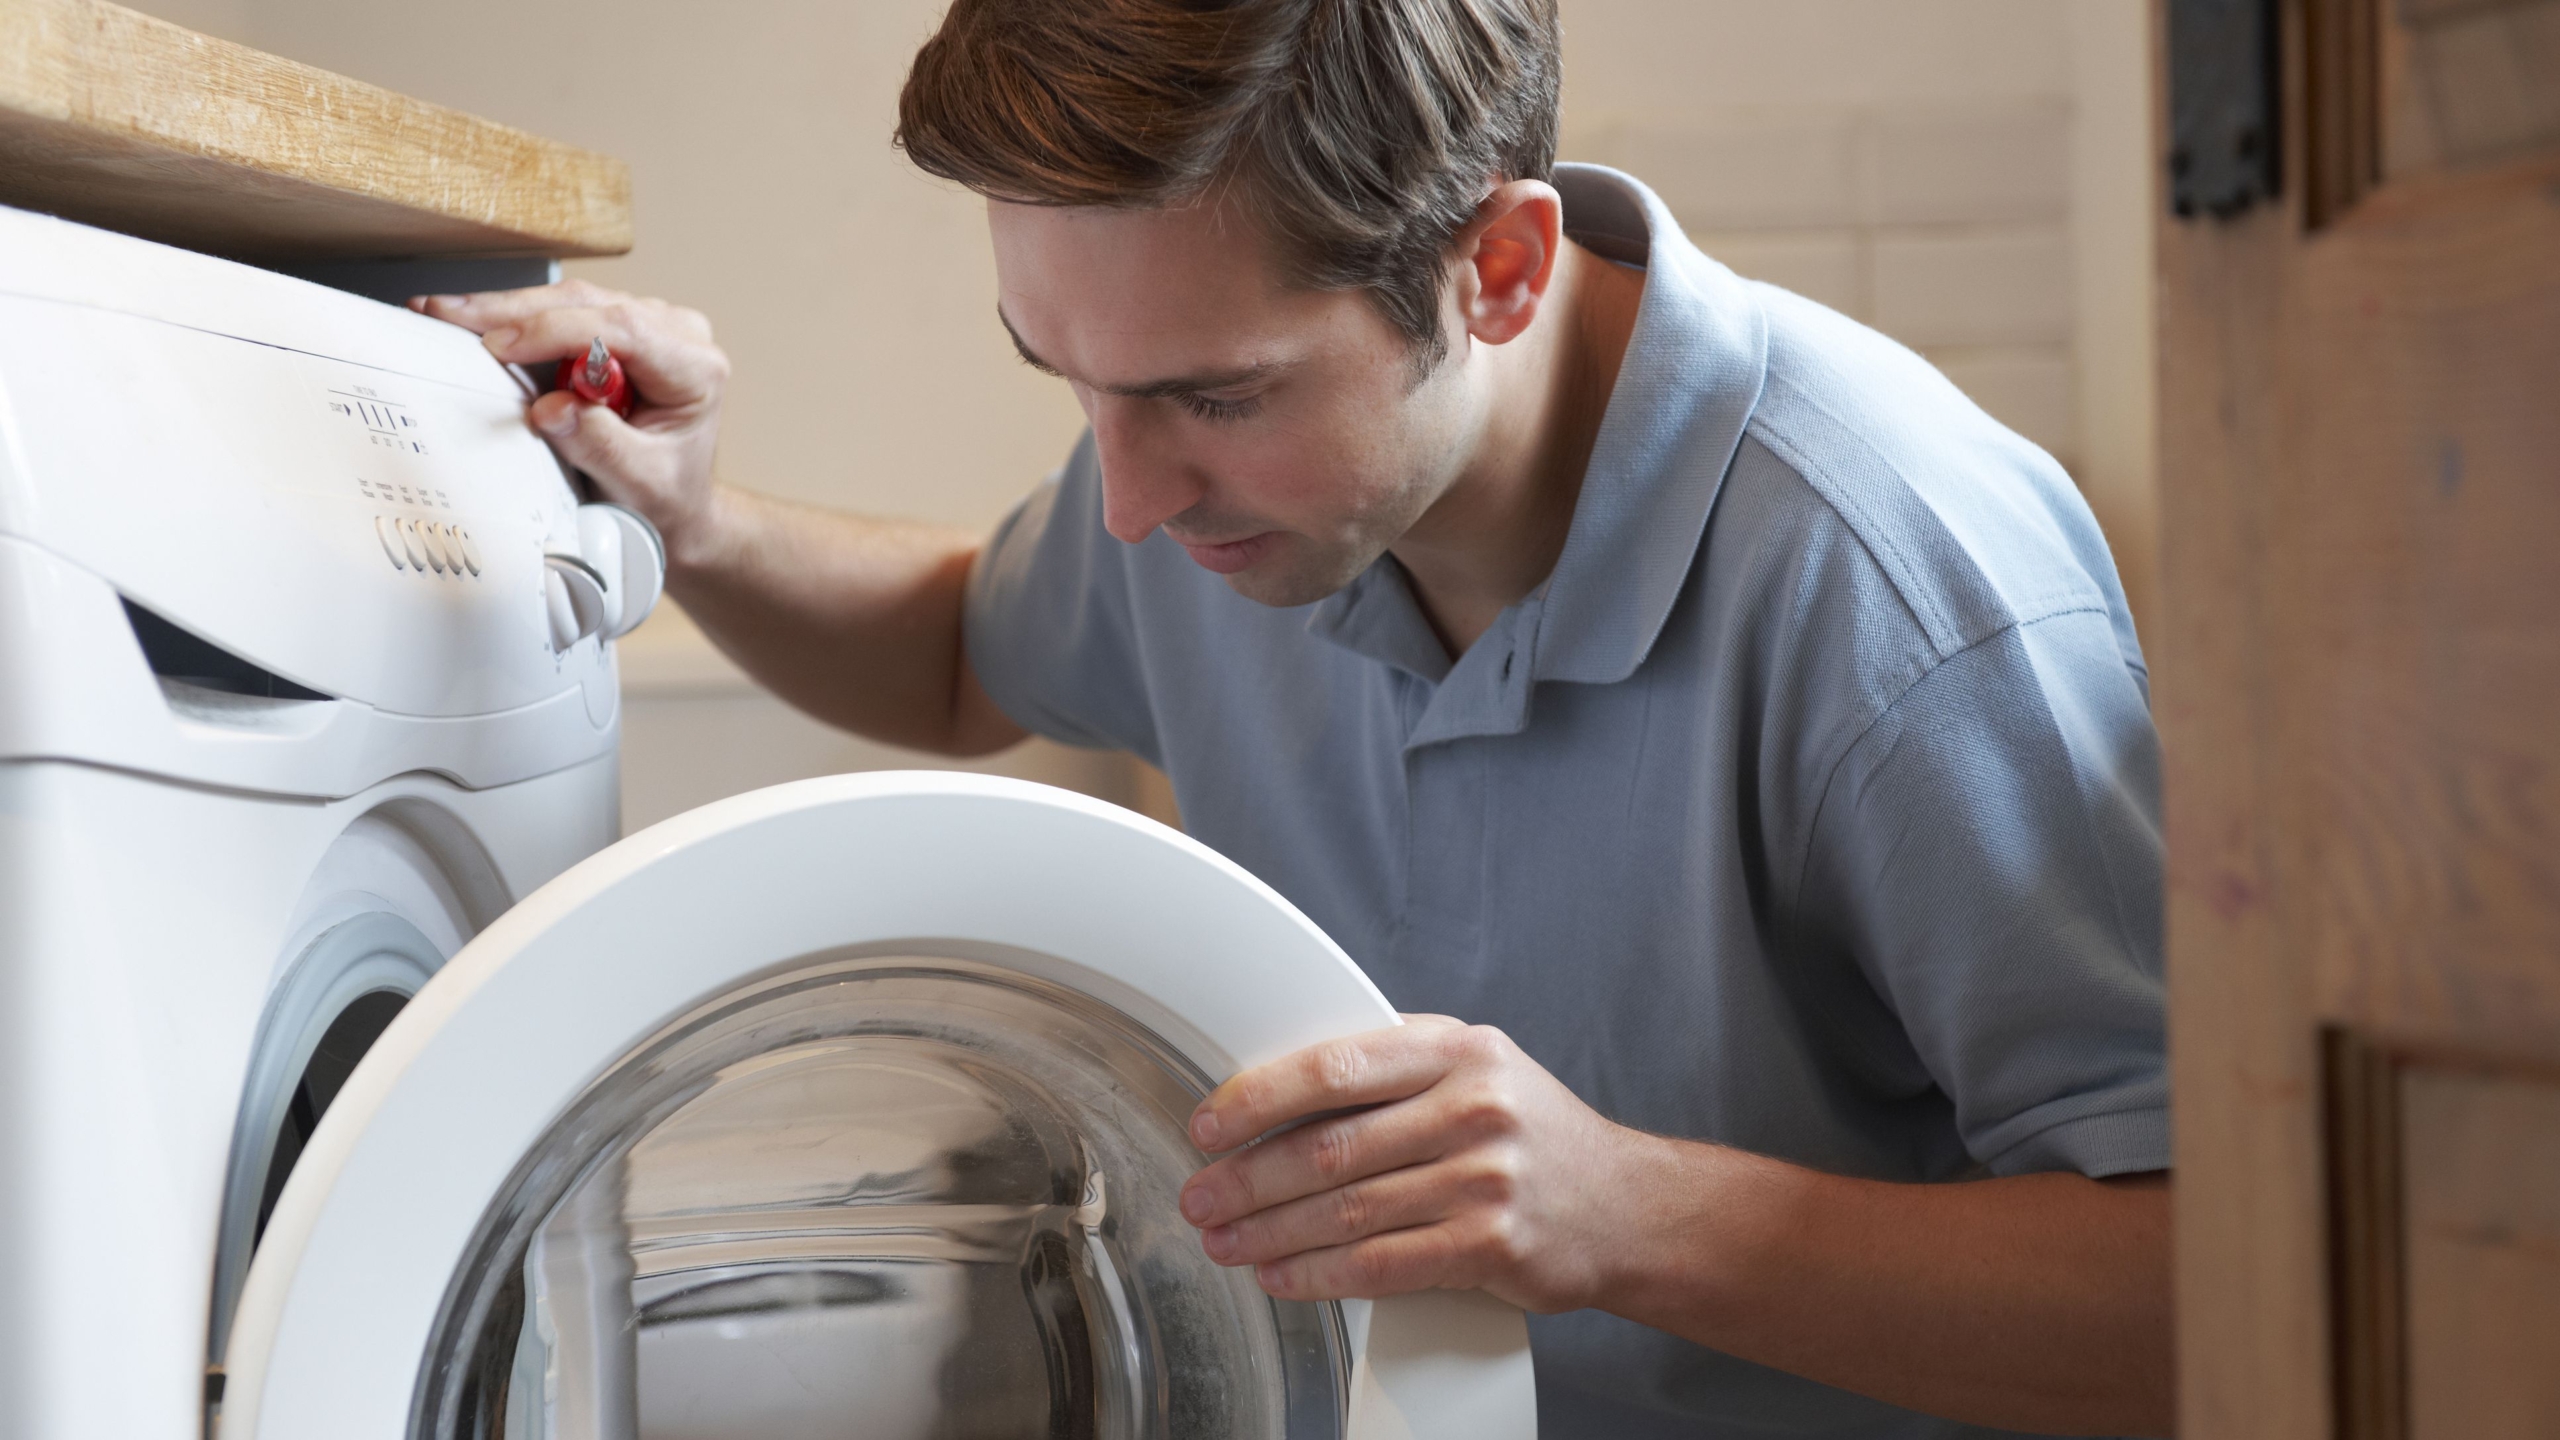 بررسی کامل ارور یا کد خطا در ماشین لباسشویی آبسال